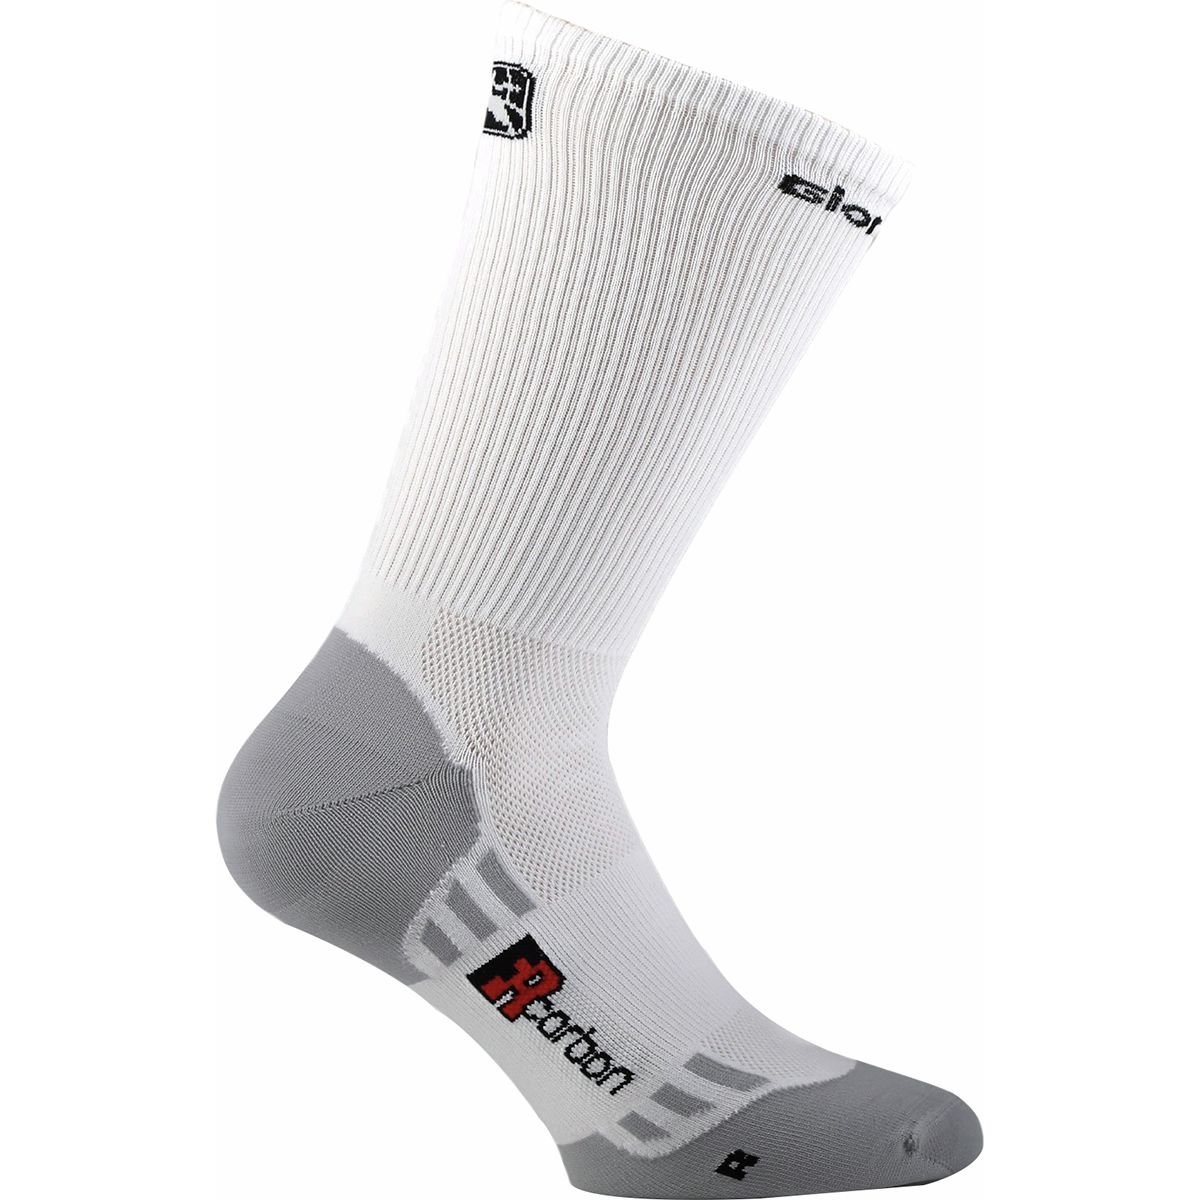 Giordana FR-C Tall Cuff Socks White, L/45-48 - Men's